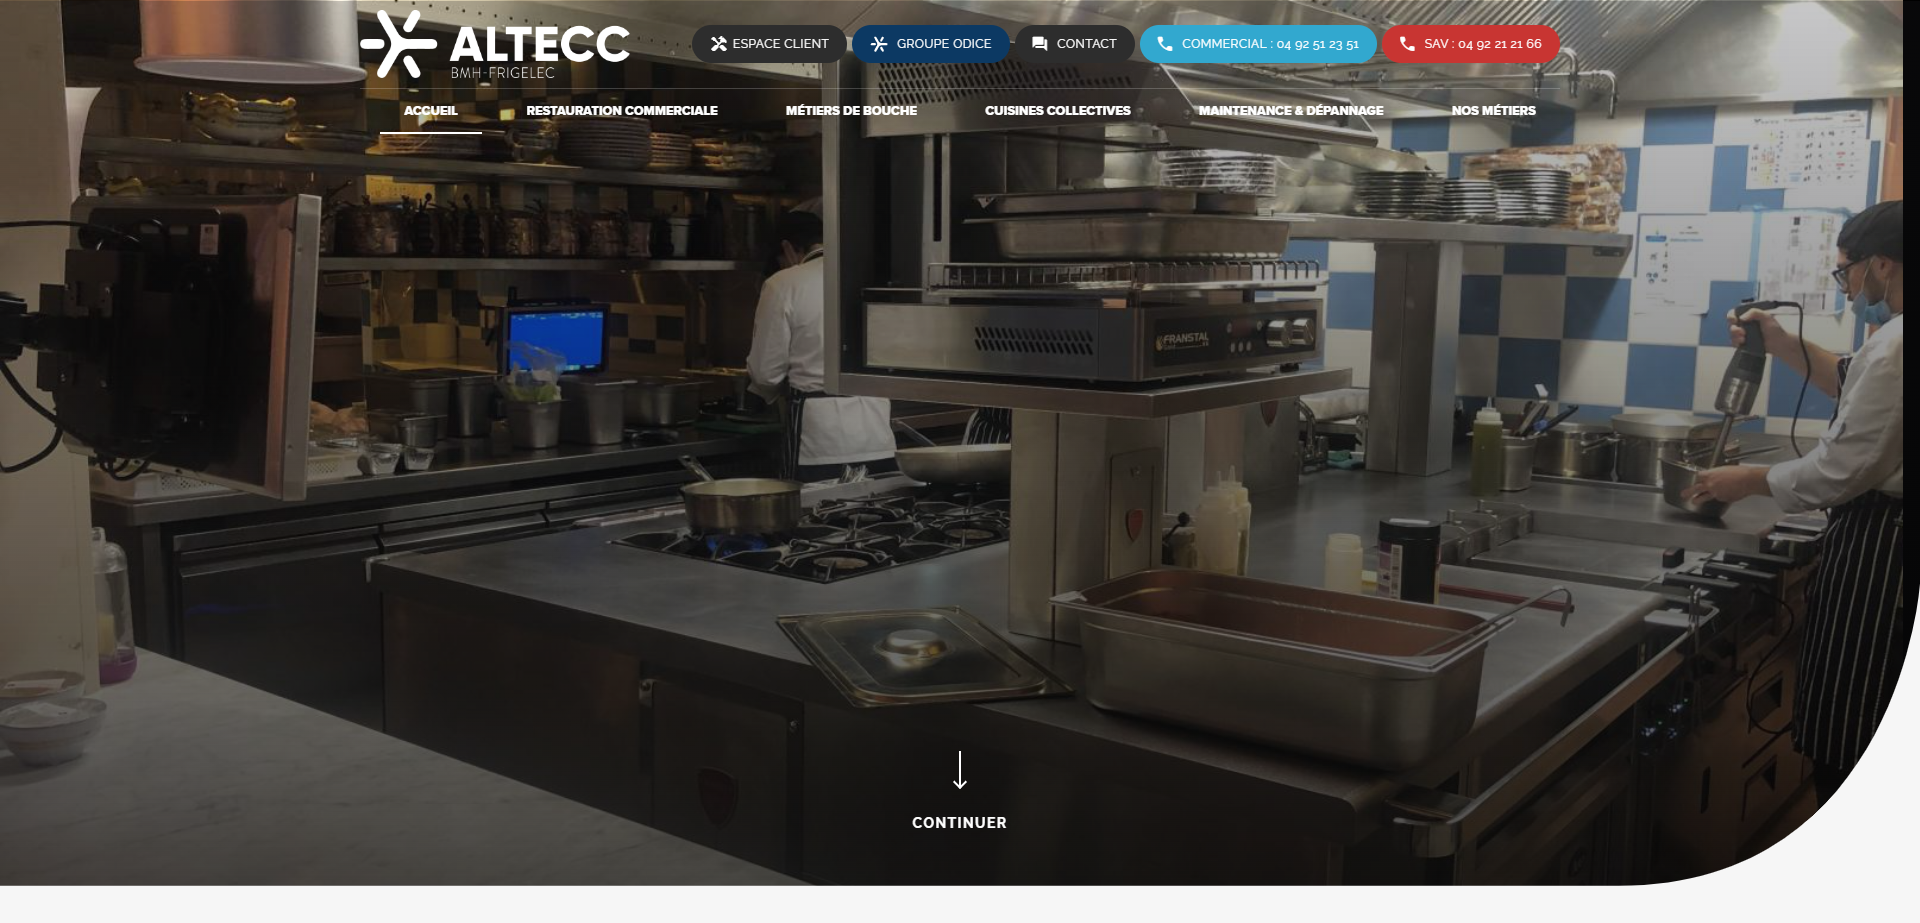 Création d'un site web pour ALTECC, spécialiste de la cuisine professionnelle en Hautes-Alpes